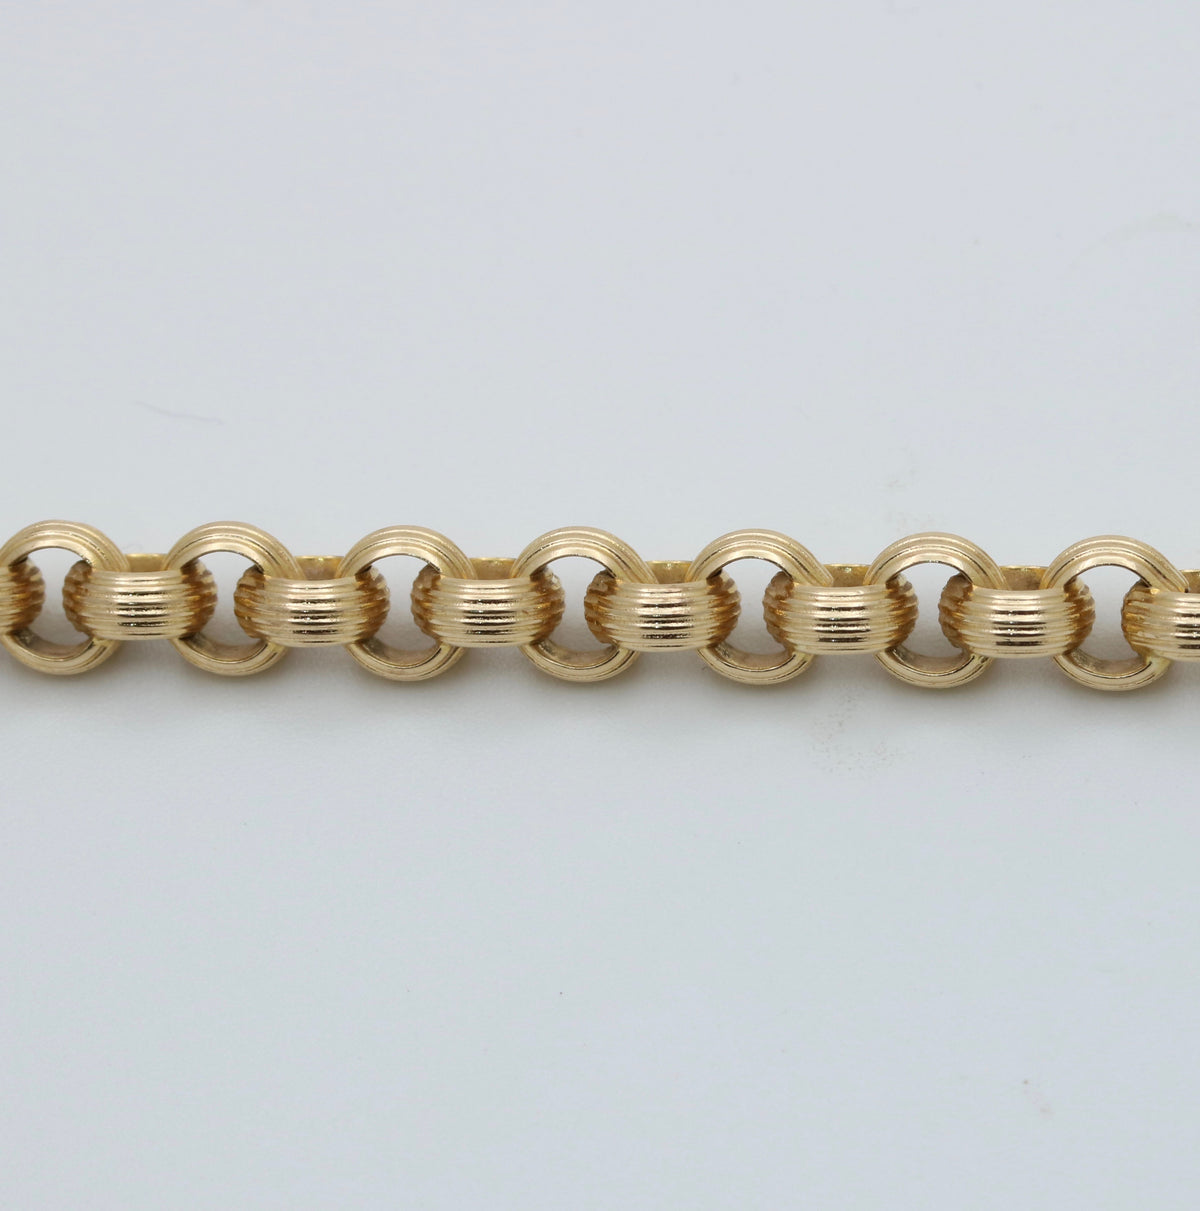 Vintage 14K Gold Textured Belcher Rolo Bracelet, 7.5” Long